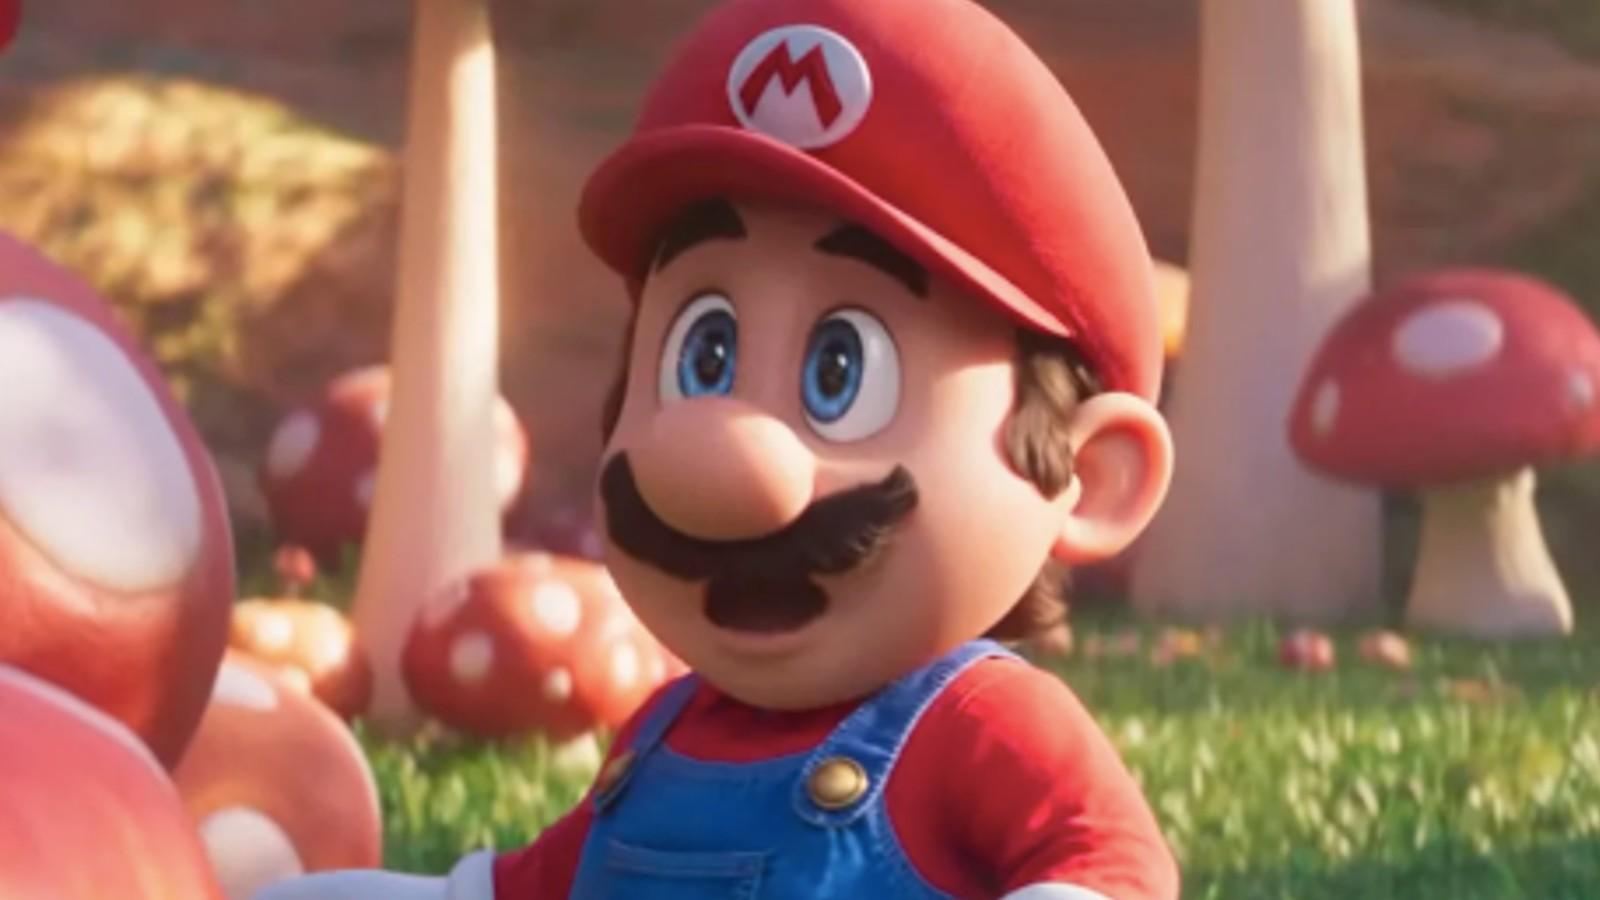 A close up of Mario looking shocked in The Super Mario Bros. Movie